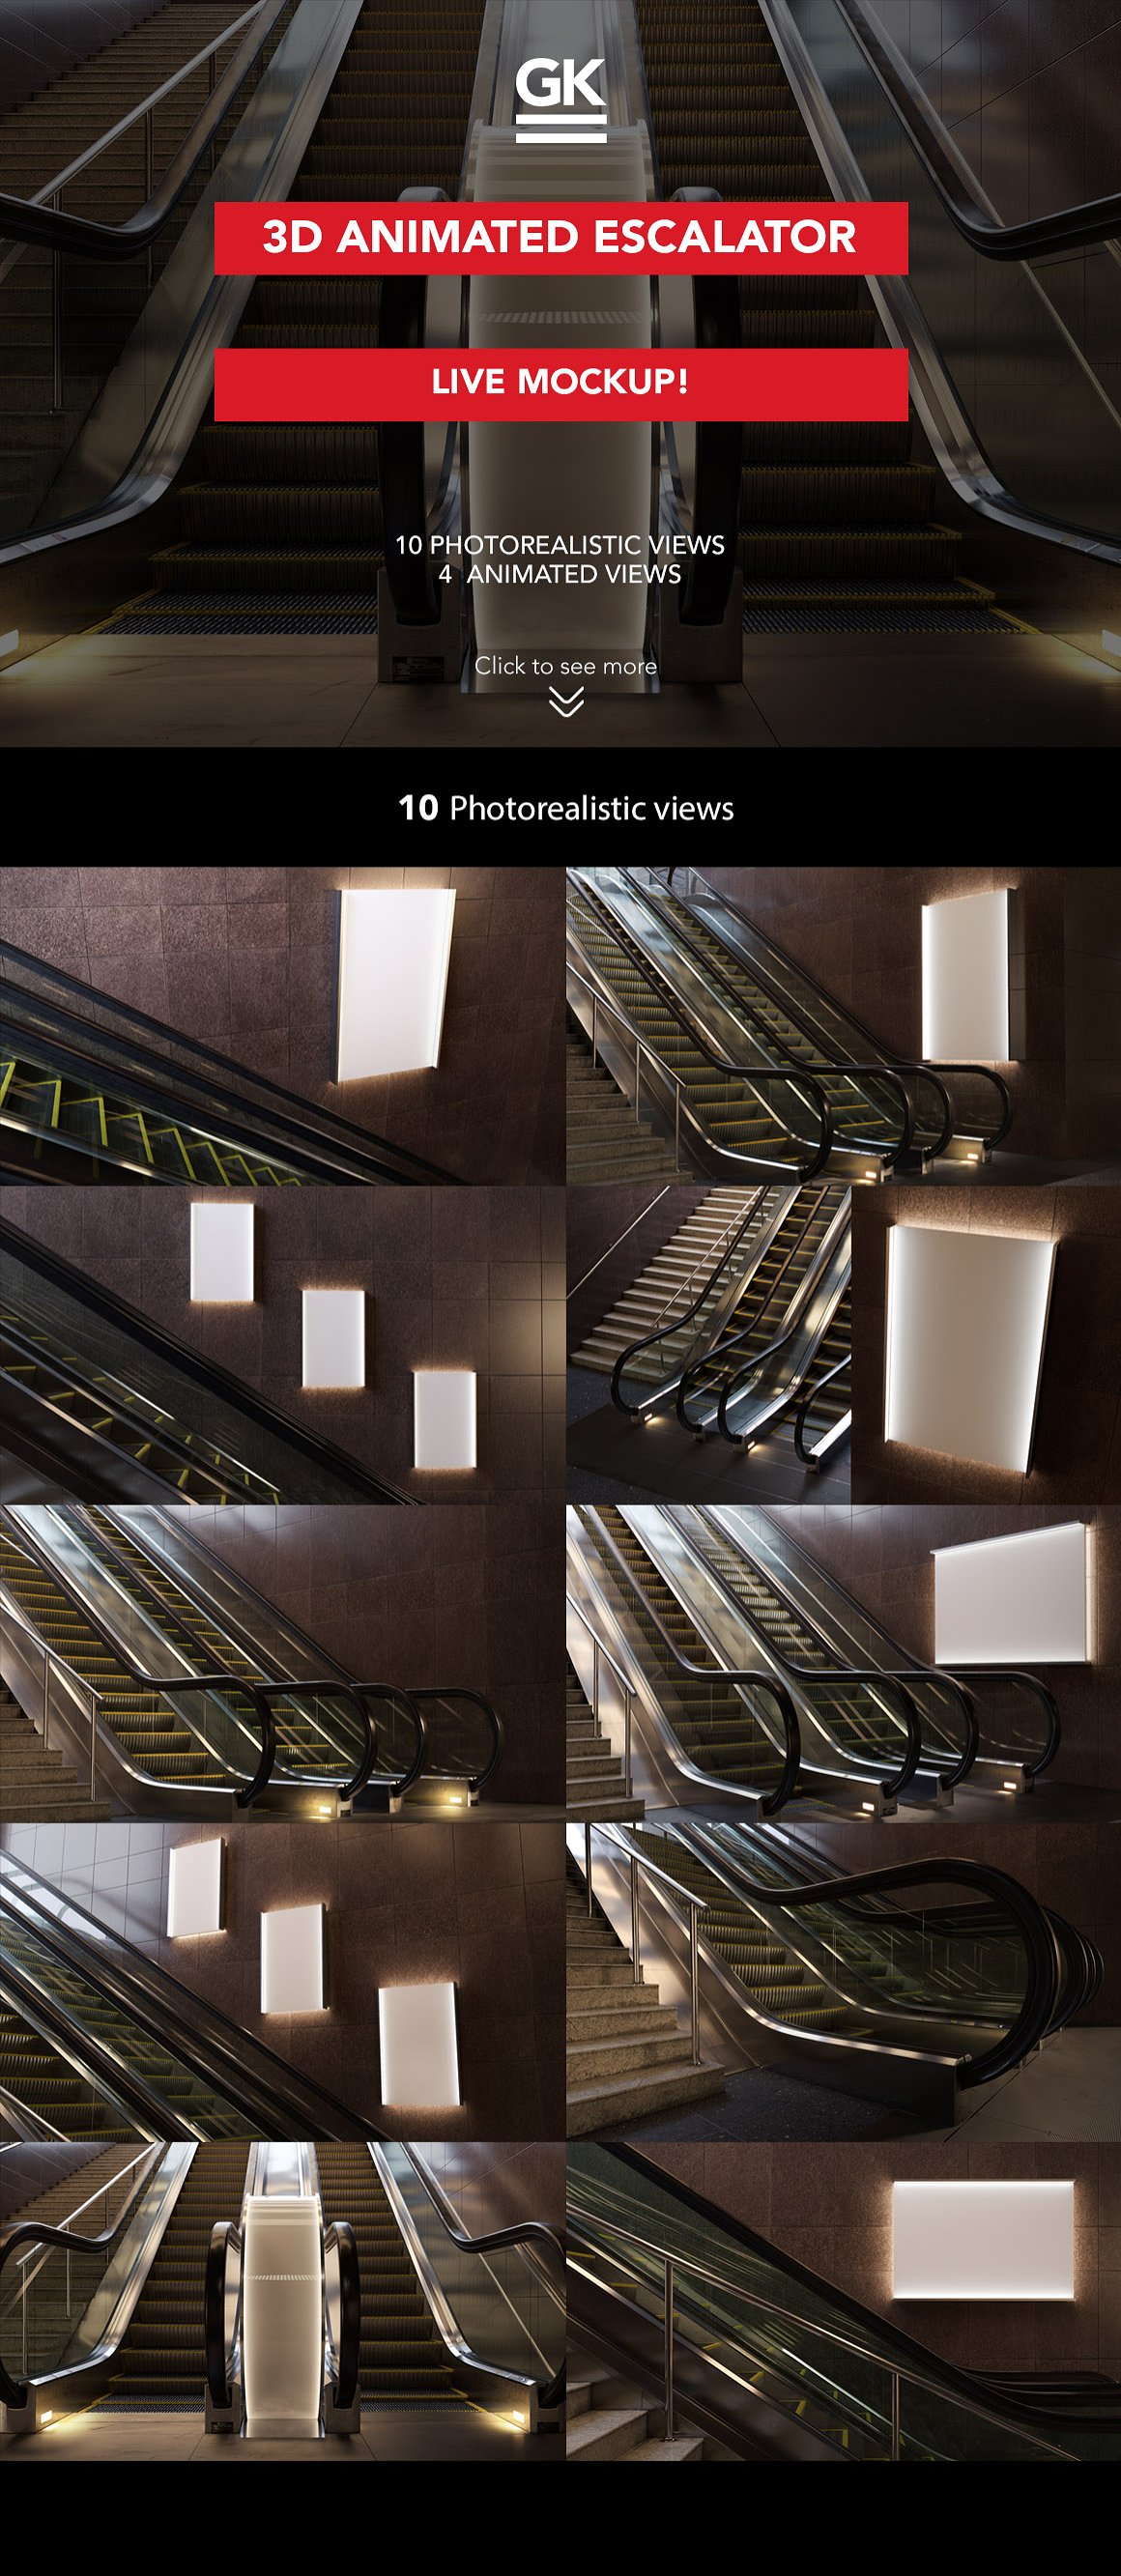 地铁商场自动扶梯灯箱广告设计提案样机PSD模板 3d Esc